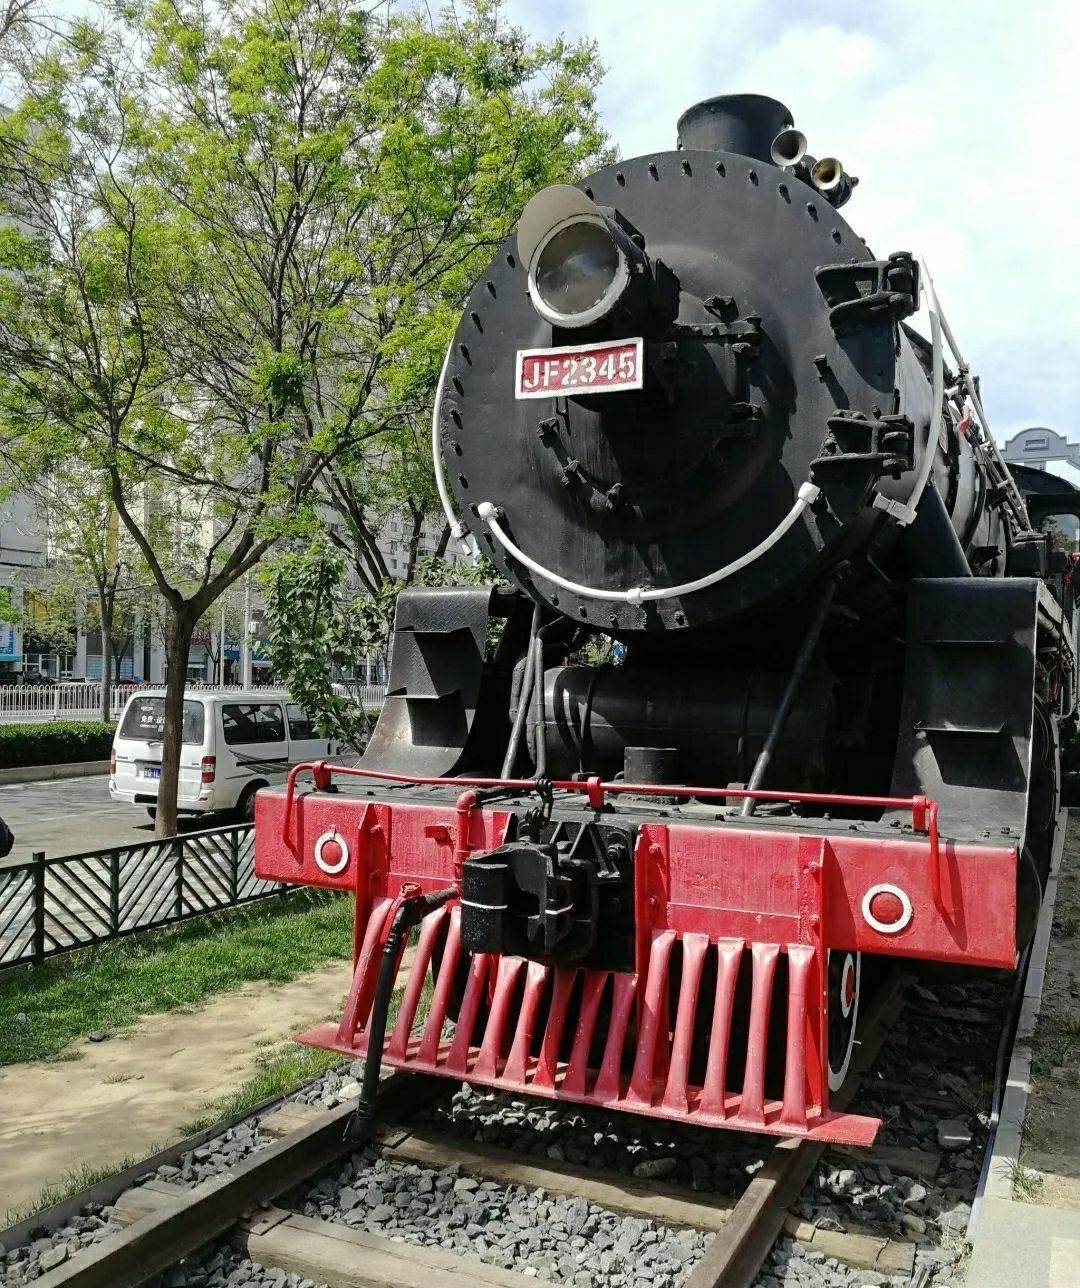 京门铁路主题公园